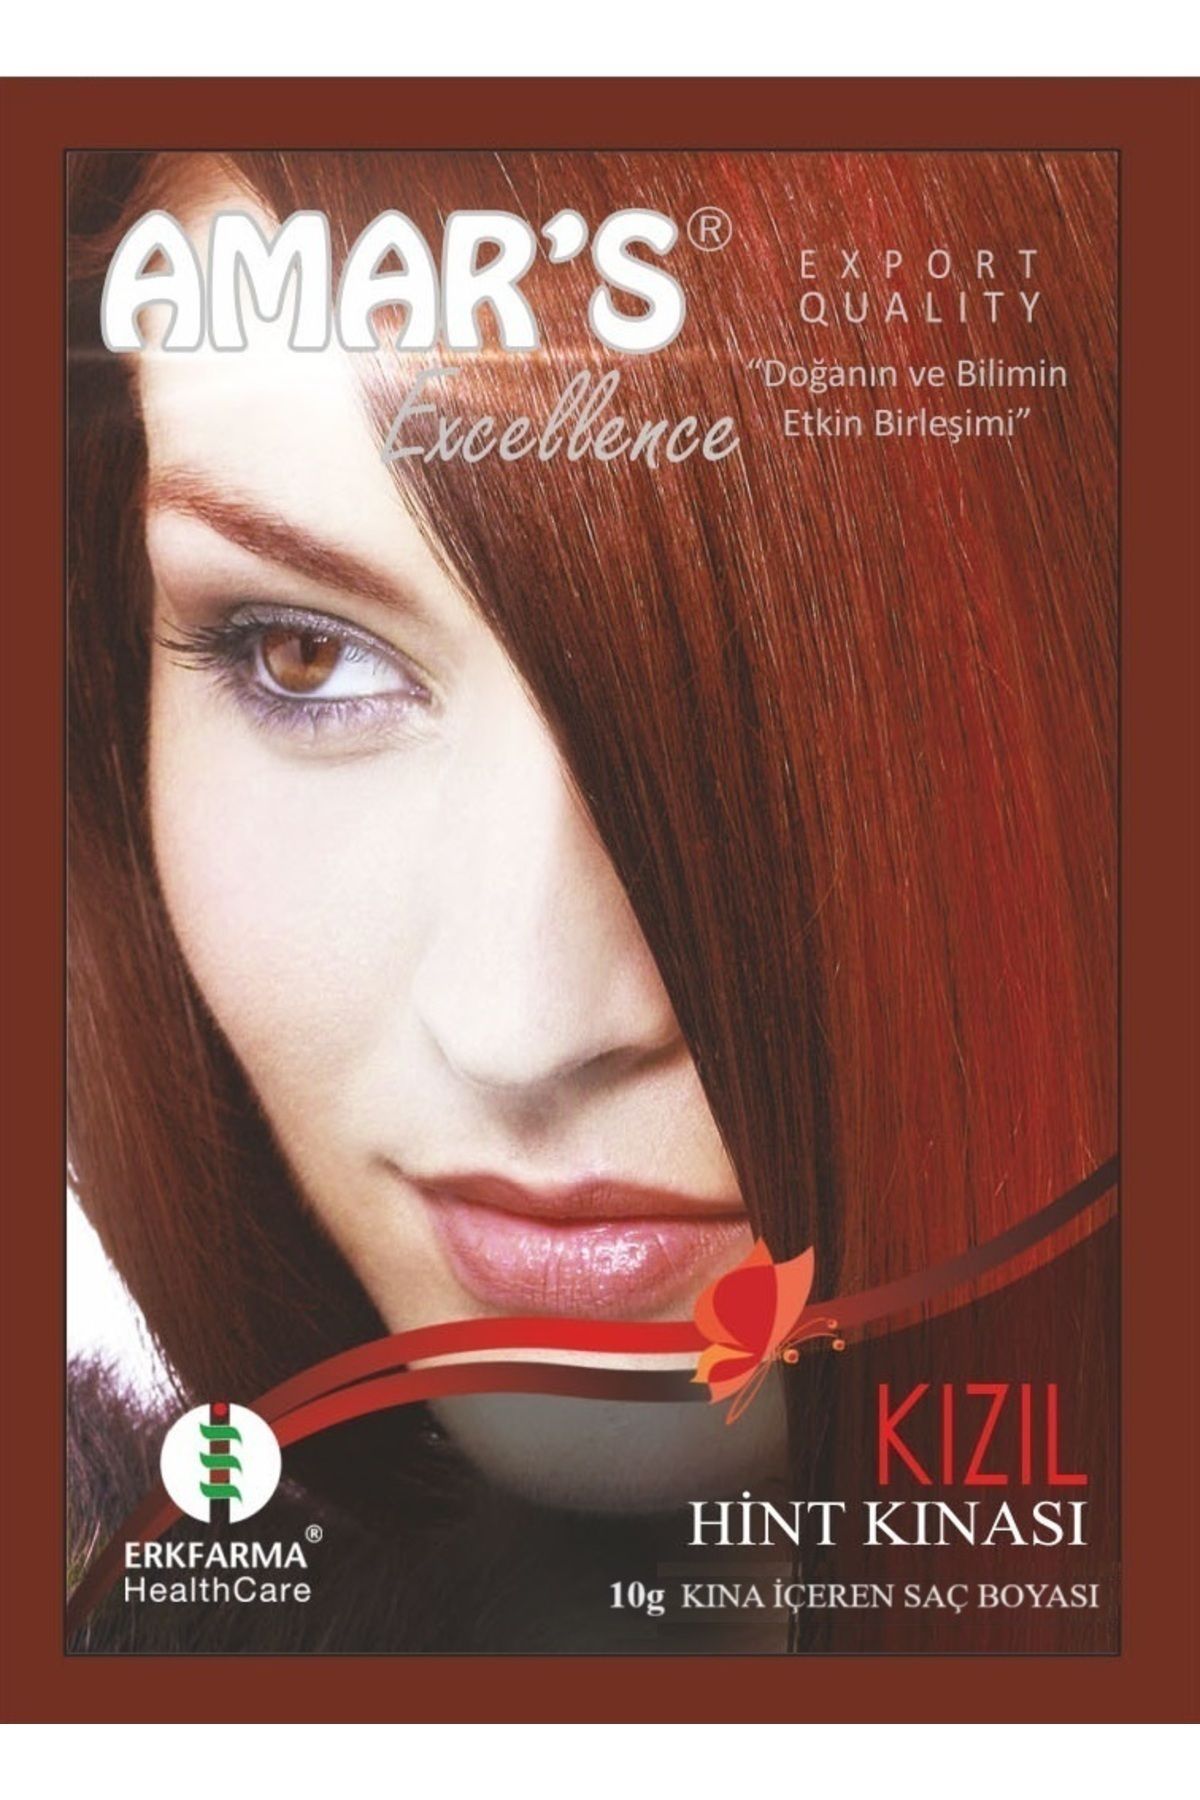 Amars Henna Kına Içeren Saç Boyası Kızıl Renk 10g - 1 Adet